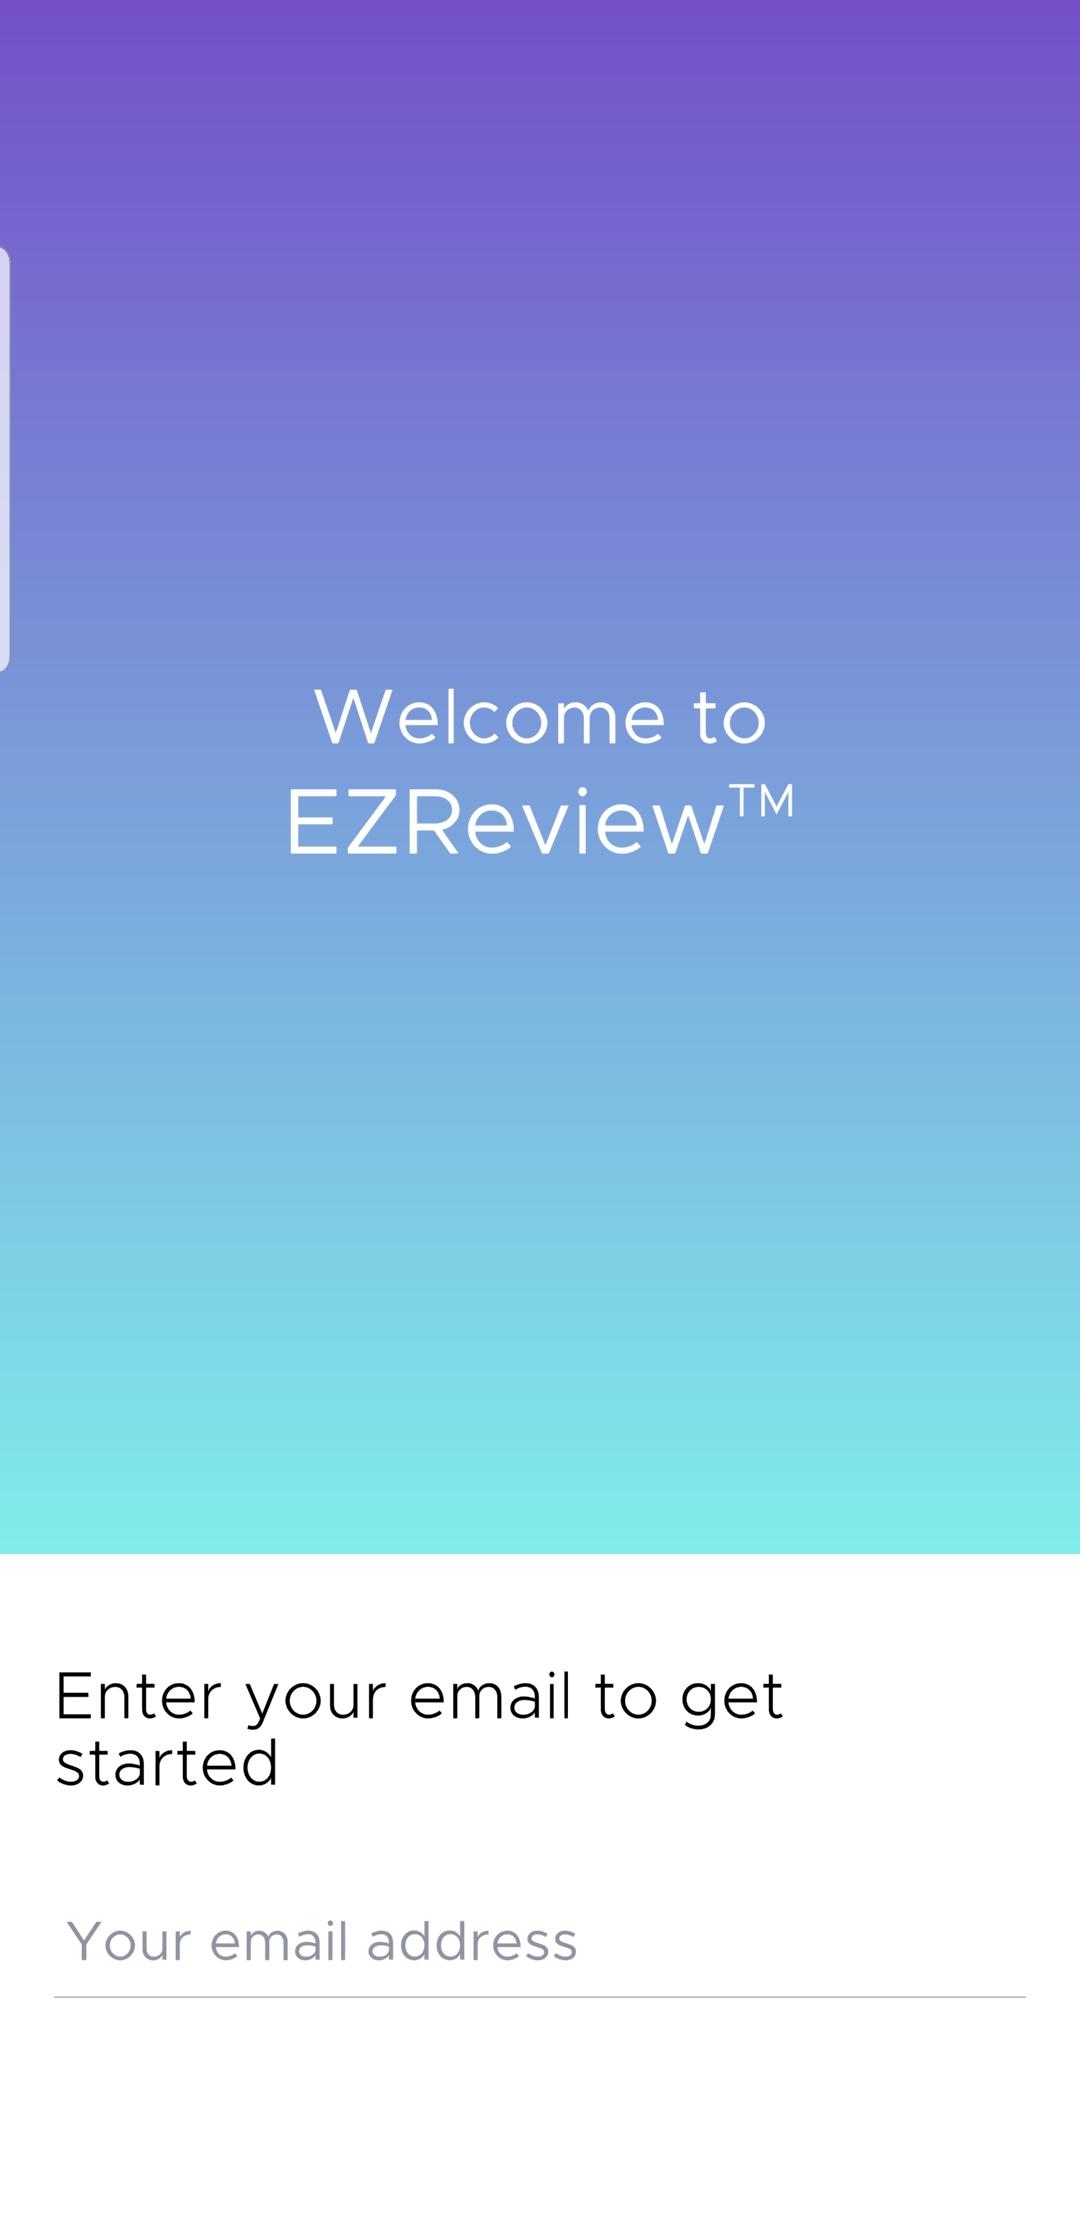 EZ Review